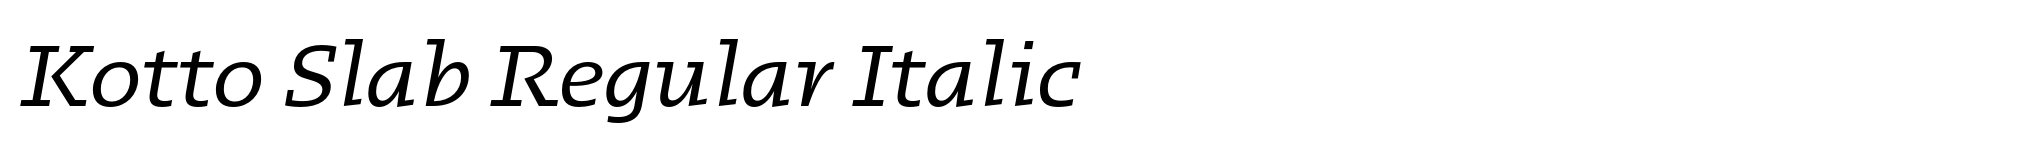 Kotto Slab Regular Italic image